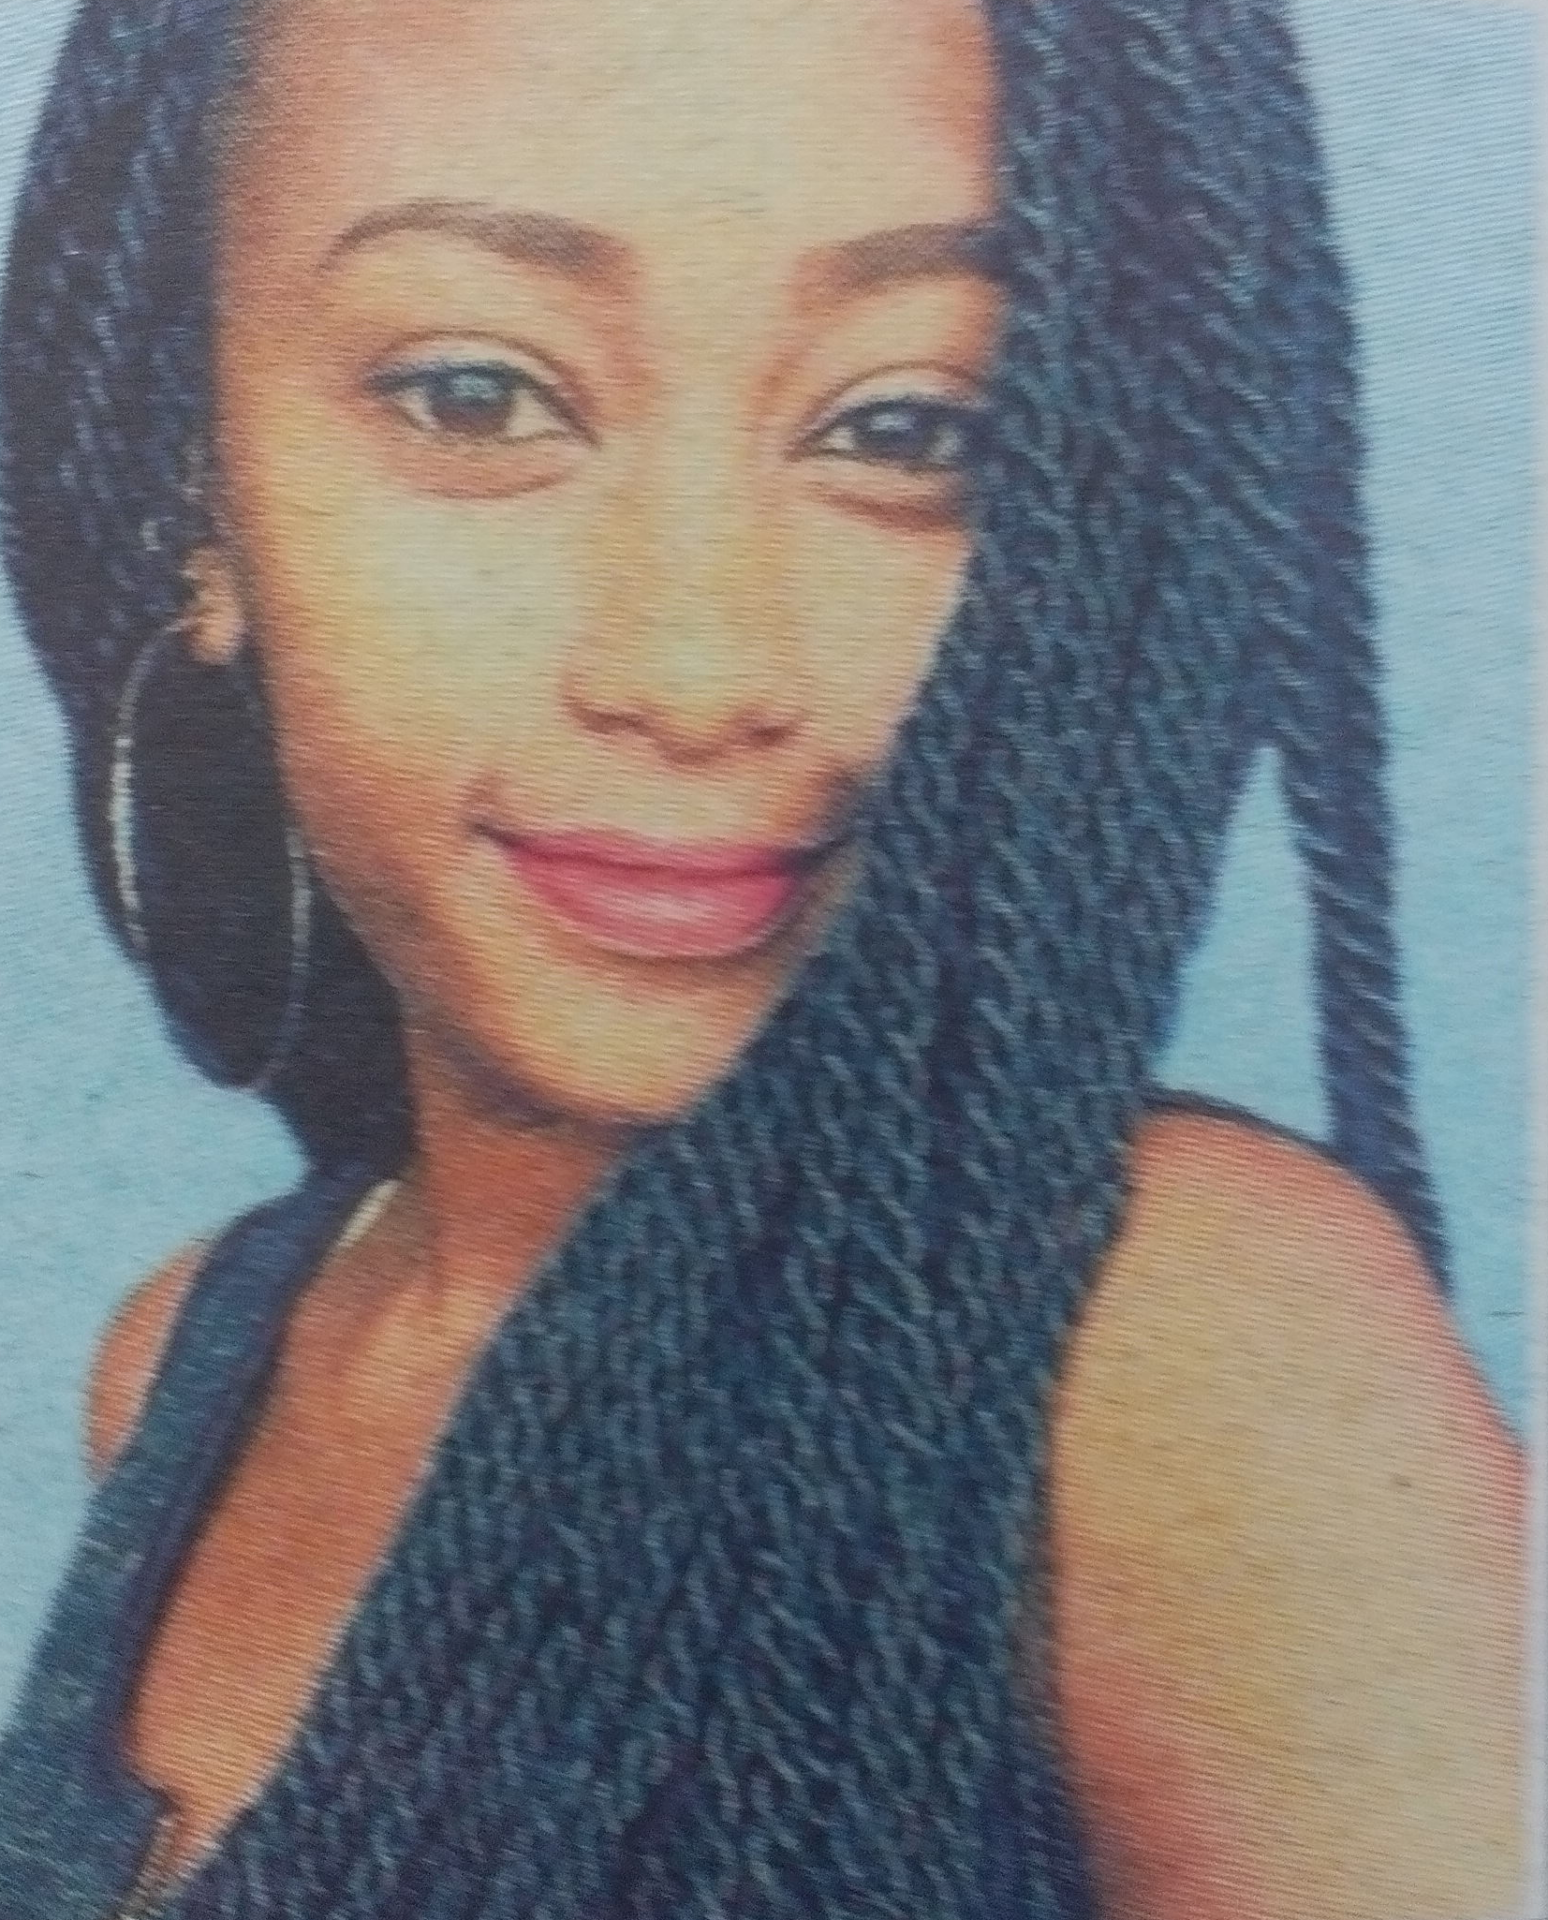 Obituary Image of Marionne Mueni Mbiti